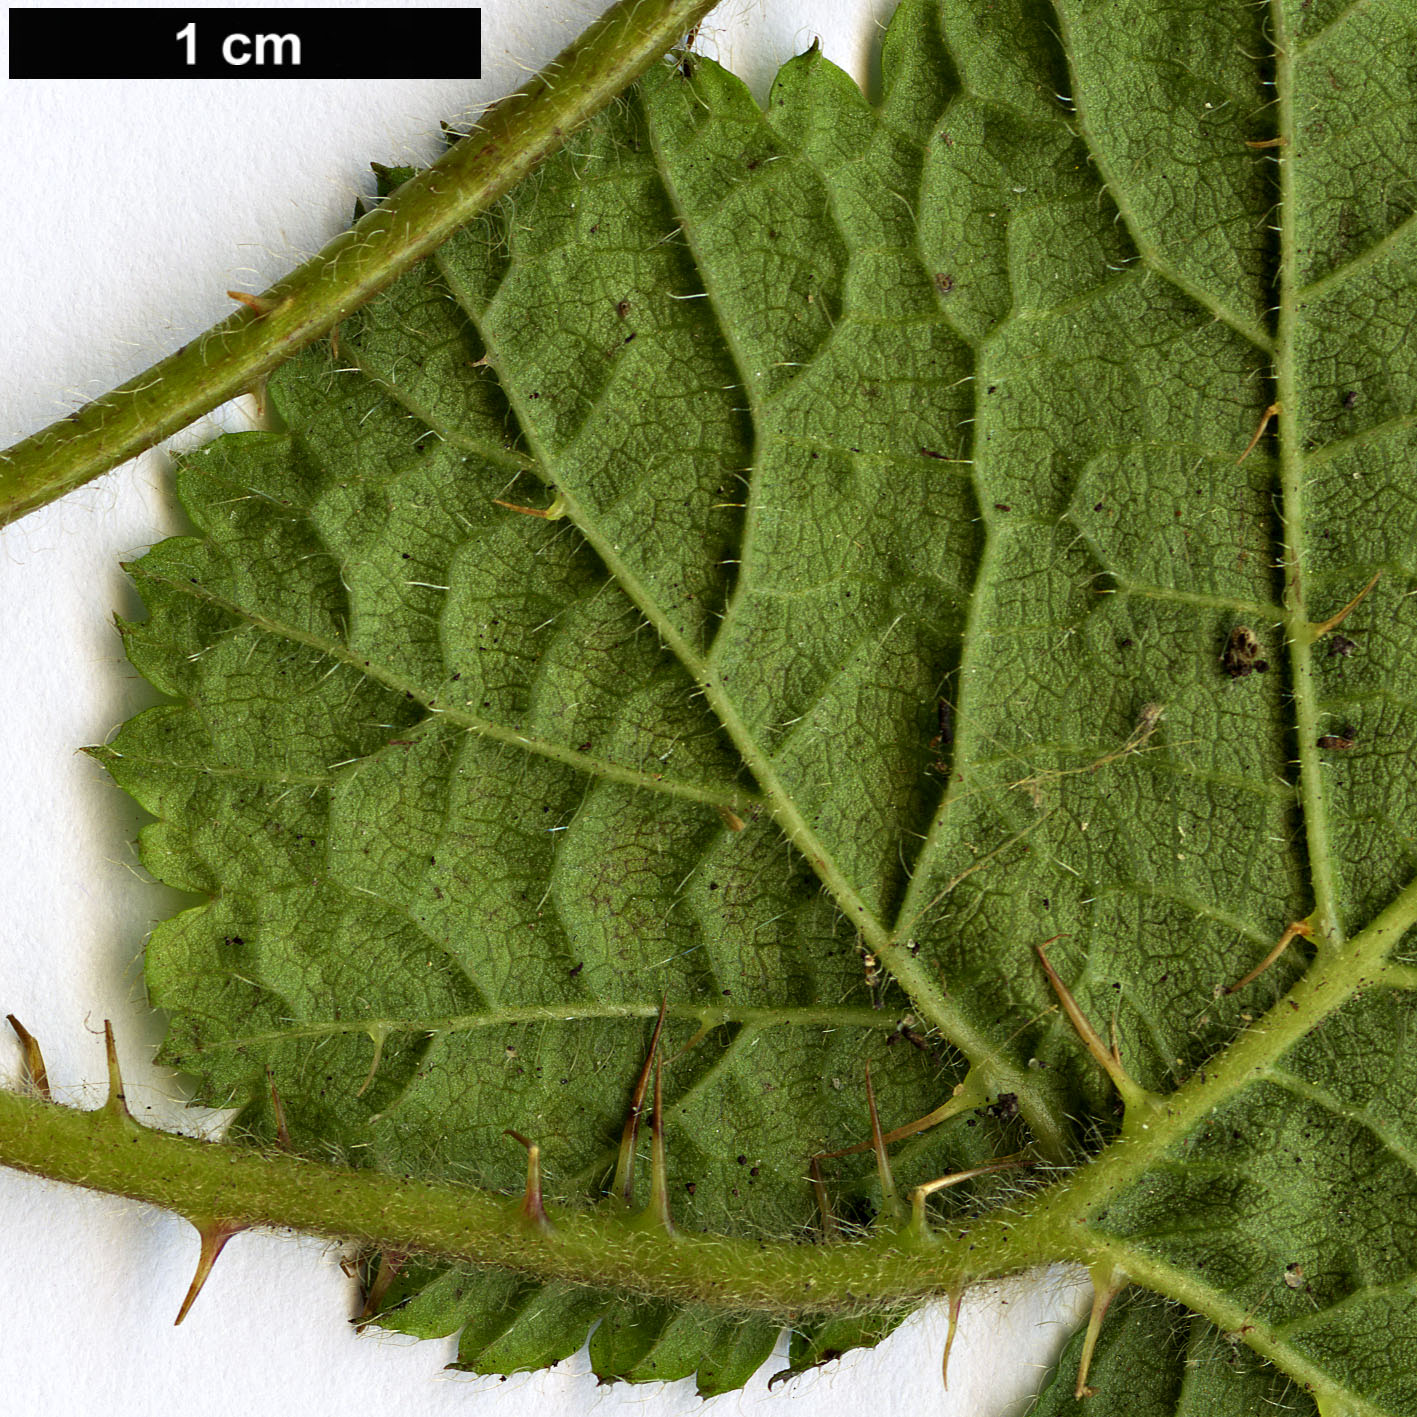 High resolution image: Family: Rosaceae - Genus: Rubus - Taxon: pectinellus